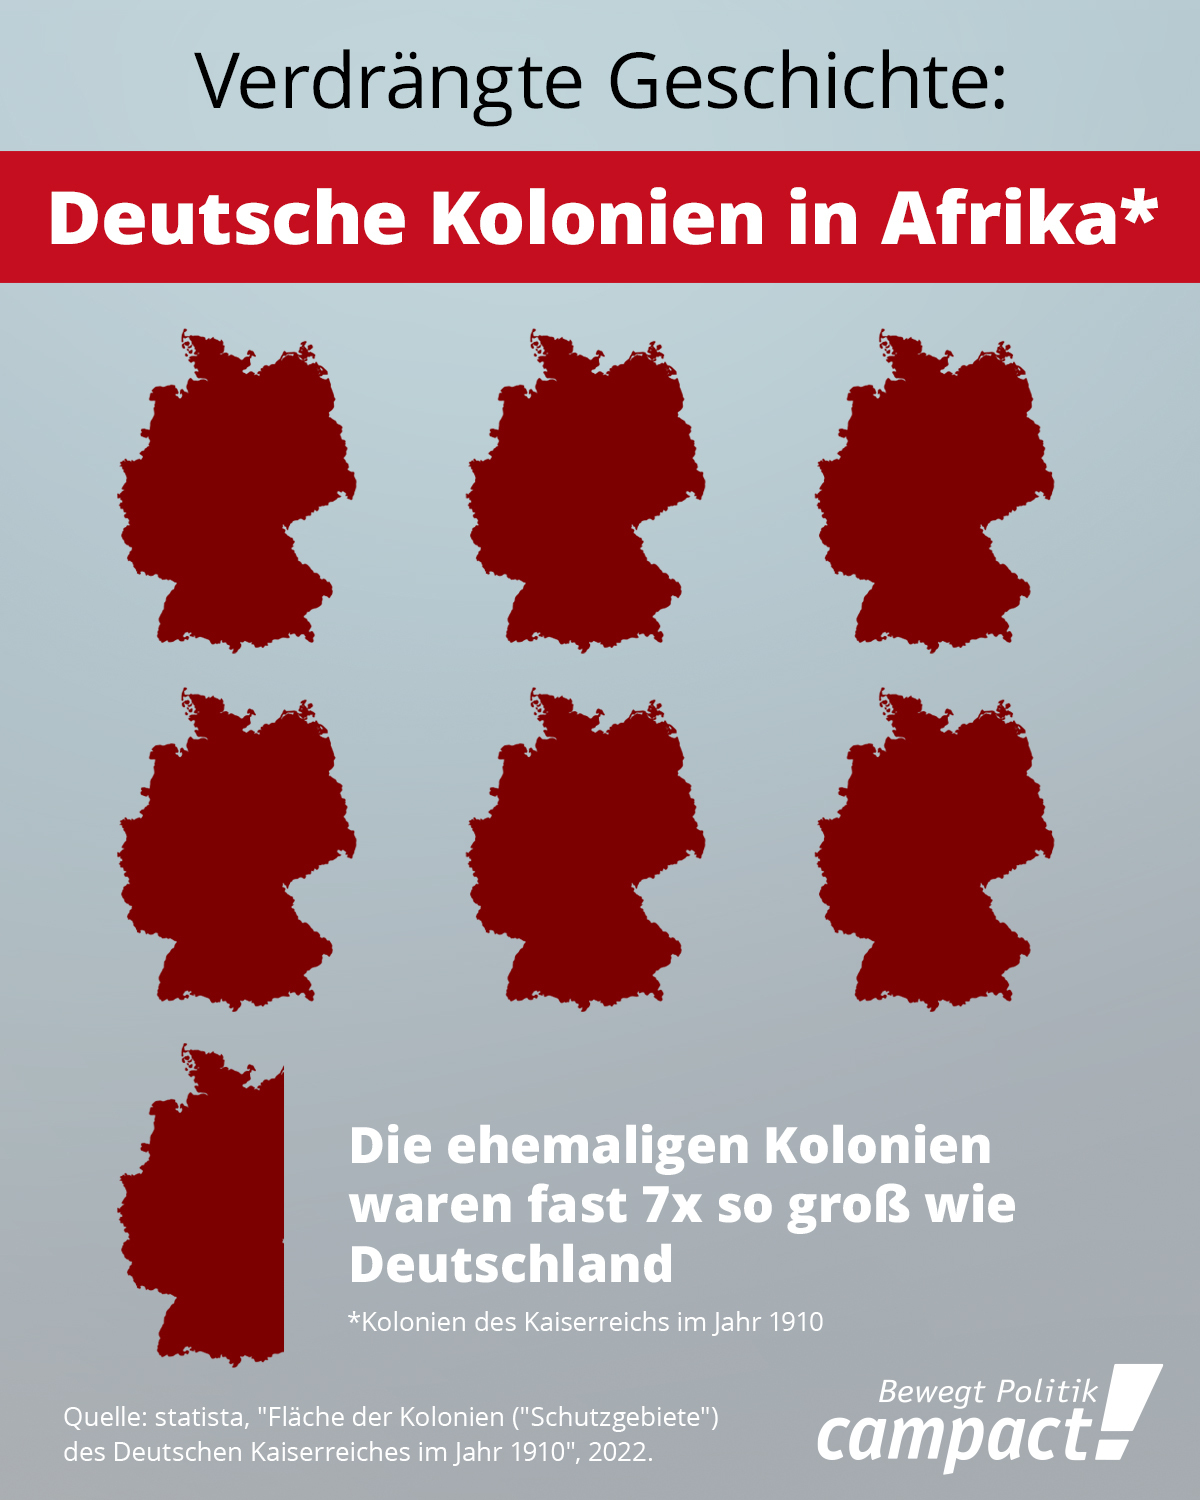 Das Bild zeigt eine Infografik, die die Landfläche Deutschlands mit der Fläche der ehemaligen deutschen Kolonien in Afrika gegenüberstellt. 